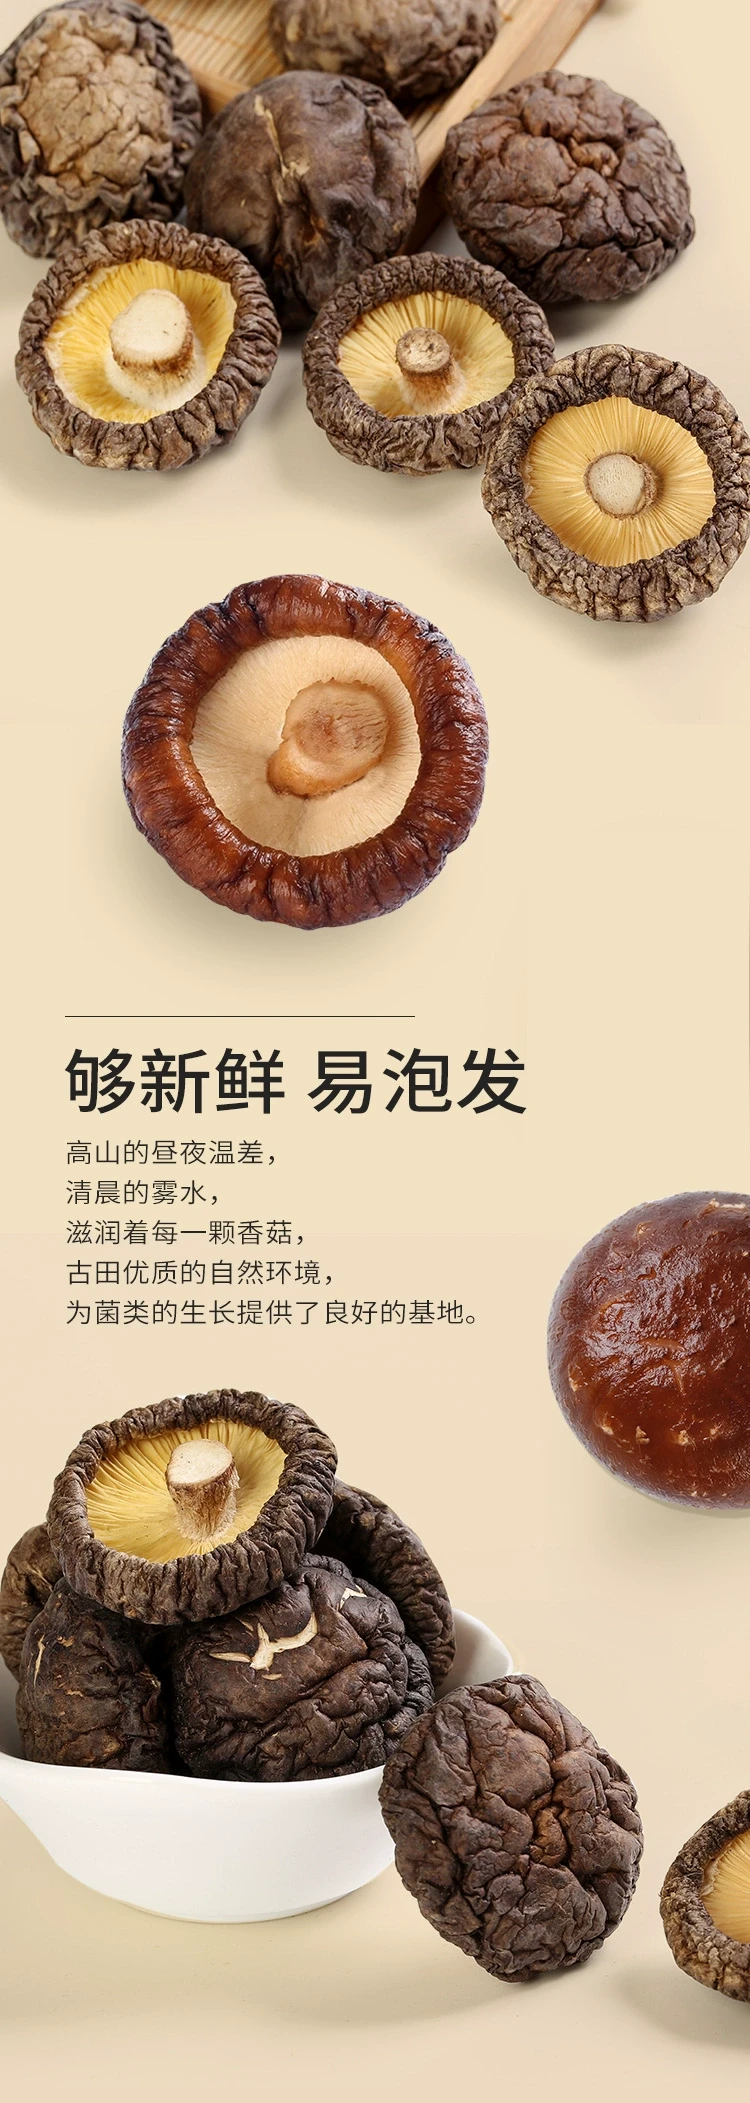 中国 盛耳 精选干货香菇 80克 高泡发菇香浓郁煲汤火锅配料约70朵